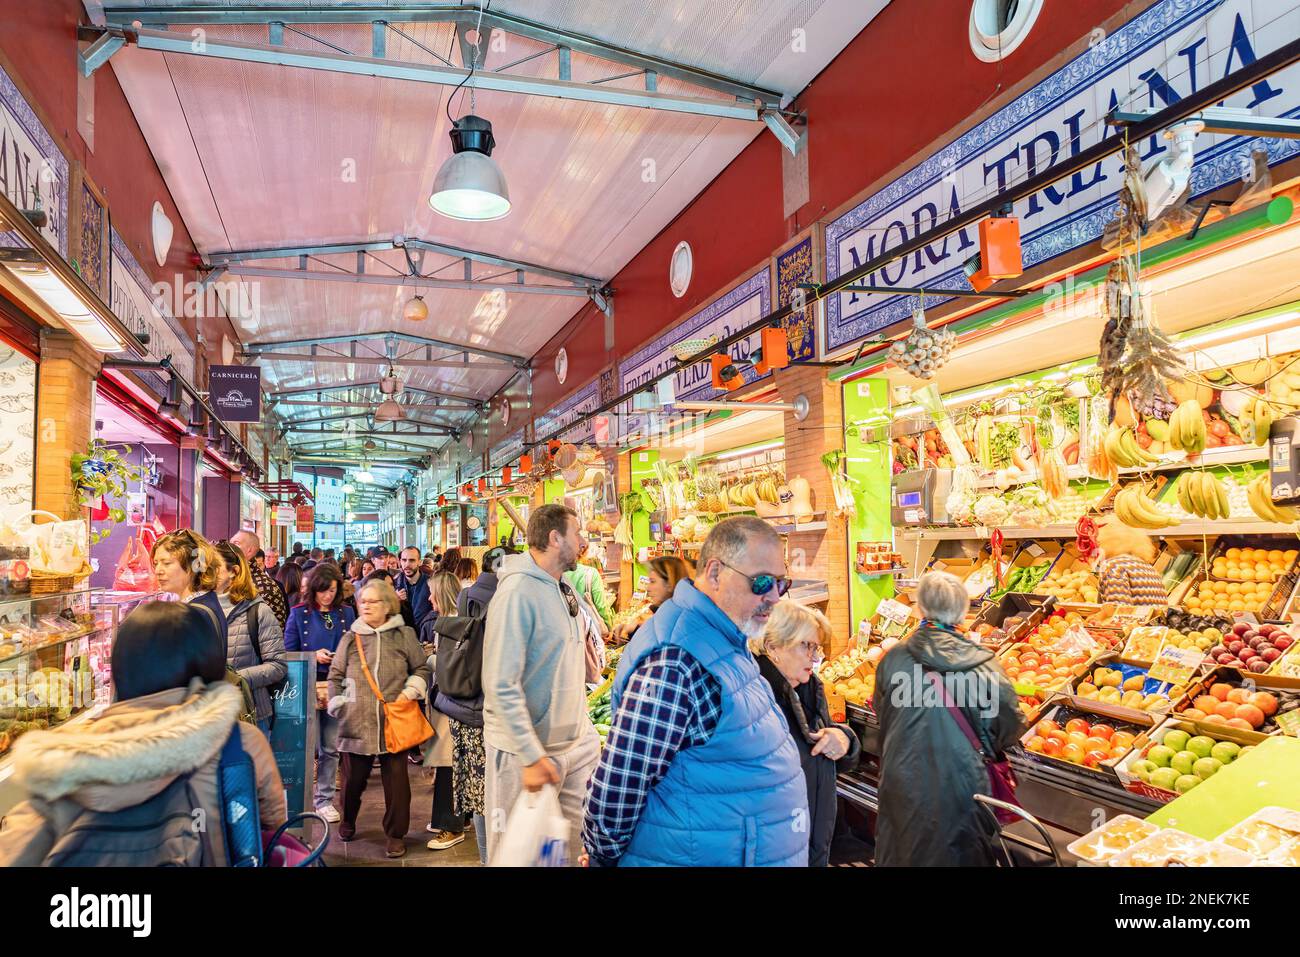 Siviglia, Spagna - 4 gennaio 2023: Interno del Mercado de Triana, un pittoresco mercato coperto con molte bancarelle che vendono prodotti agricoli, carne Foto Stock